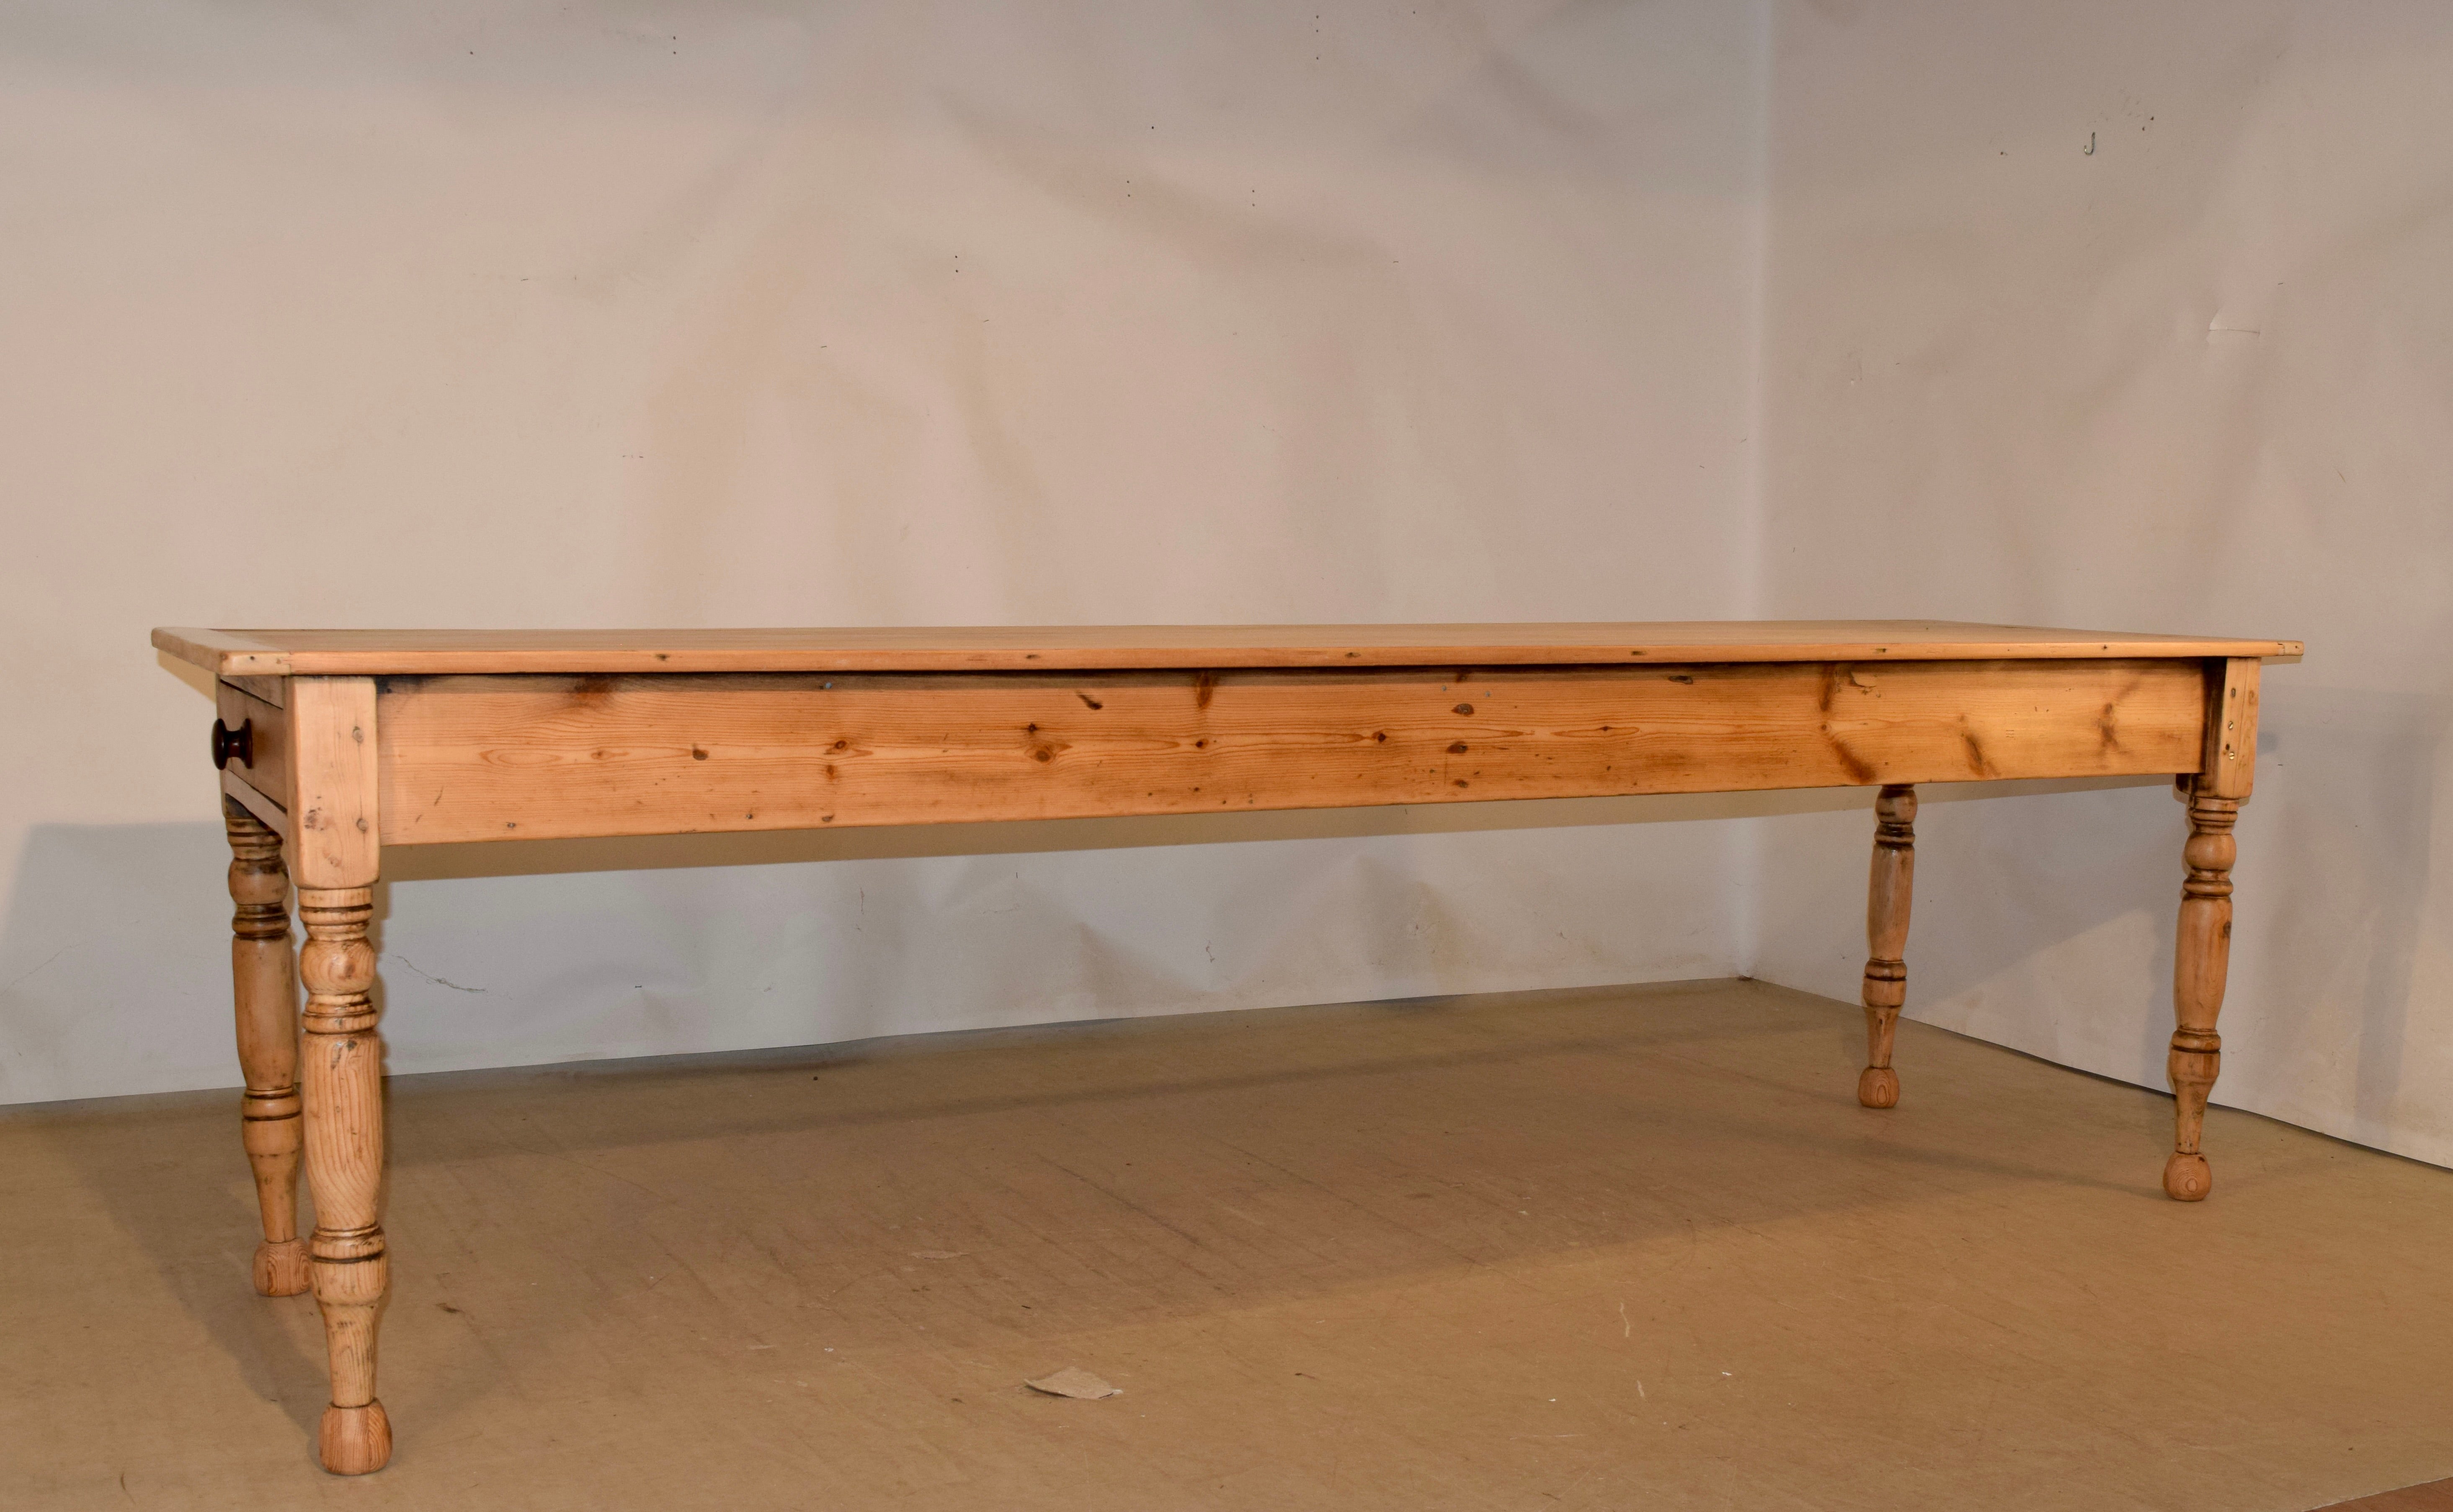 englischer Bauernhoftisch aus dem 19. Jahrhundert aus Kiefernholz. Die Platte besteht aus fünf Brettern und ist an den Enden mit Platanenholz umwickelt, um ein Schrumpfen zu verhindern. Die Schürze ist eine einfache Schürze und enthält eine einzelne